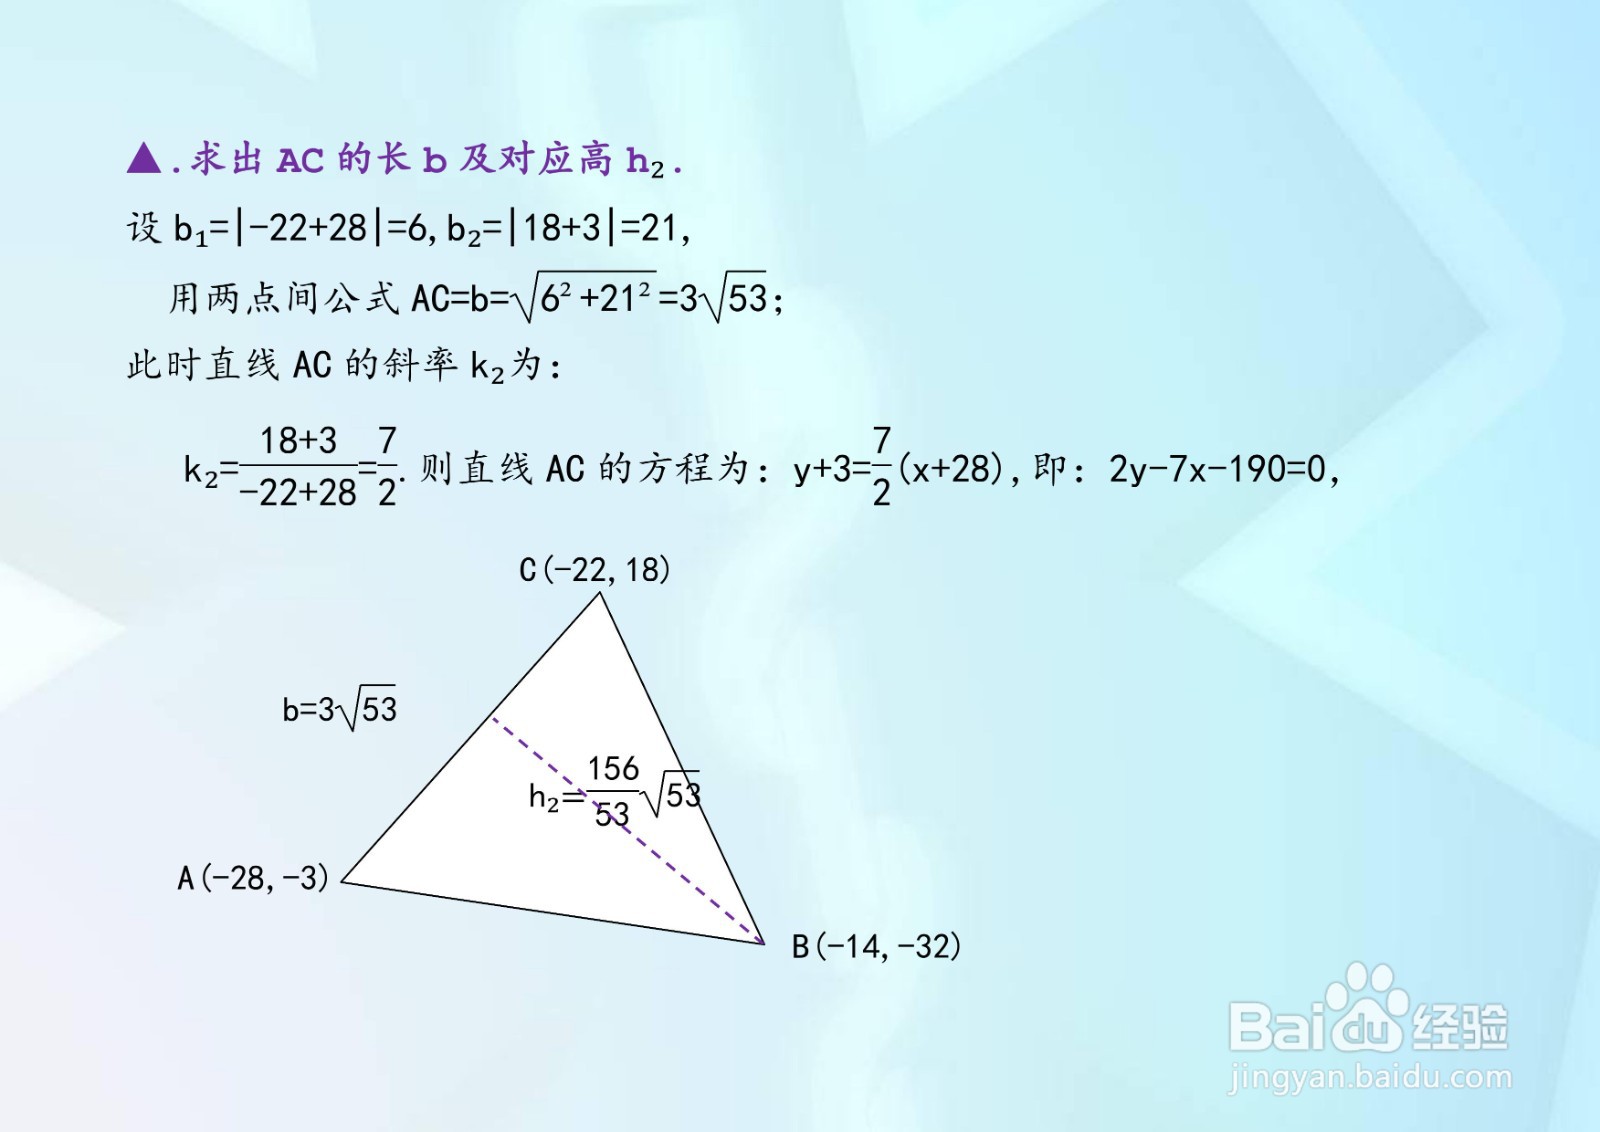 求经过三点A,B,C三角形的面积的多种计算方法A3